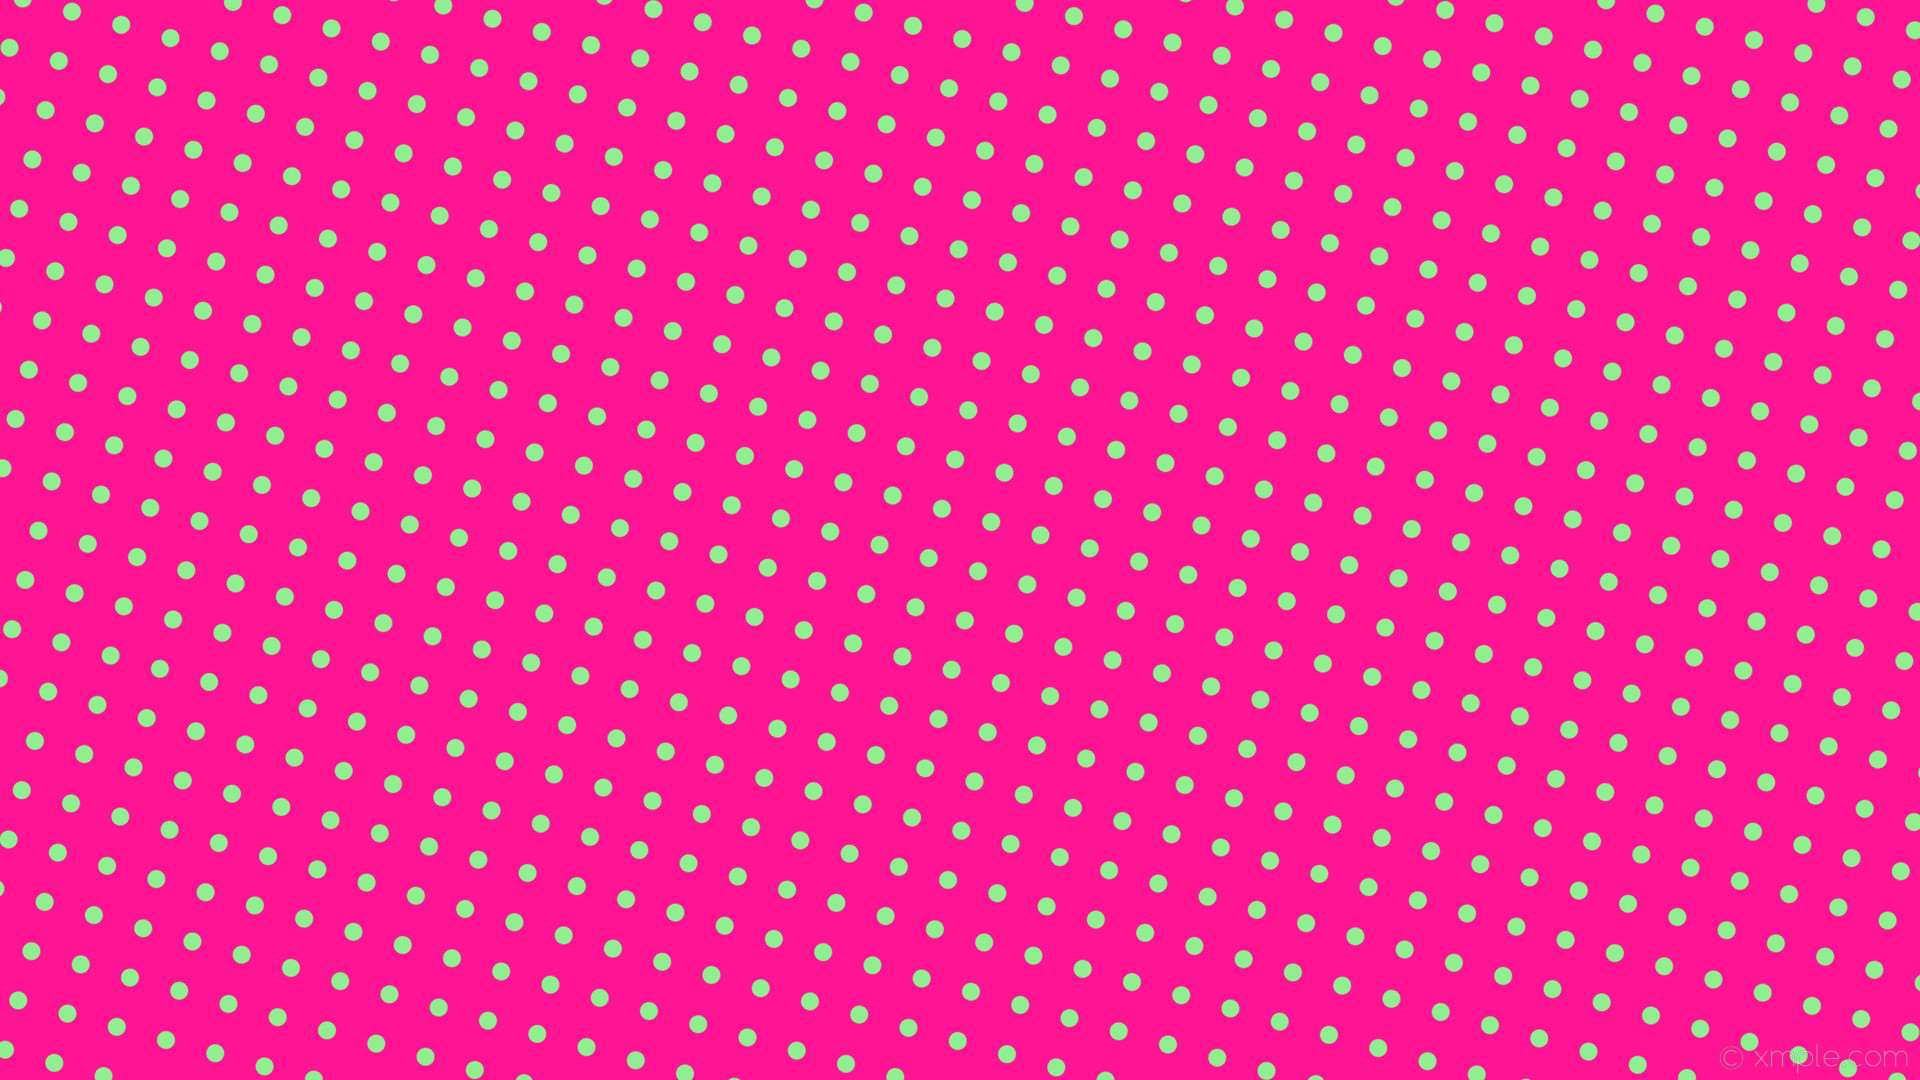 1920x1080 wallpaper spots pink polka green dots deep pink light green #ff1493 #90ee90  255Â°